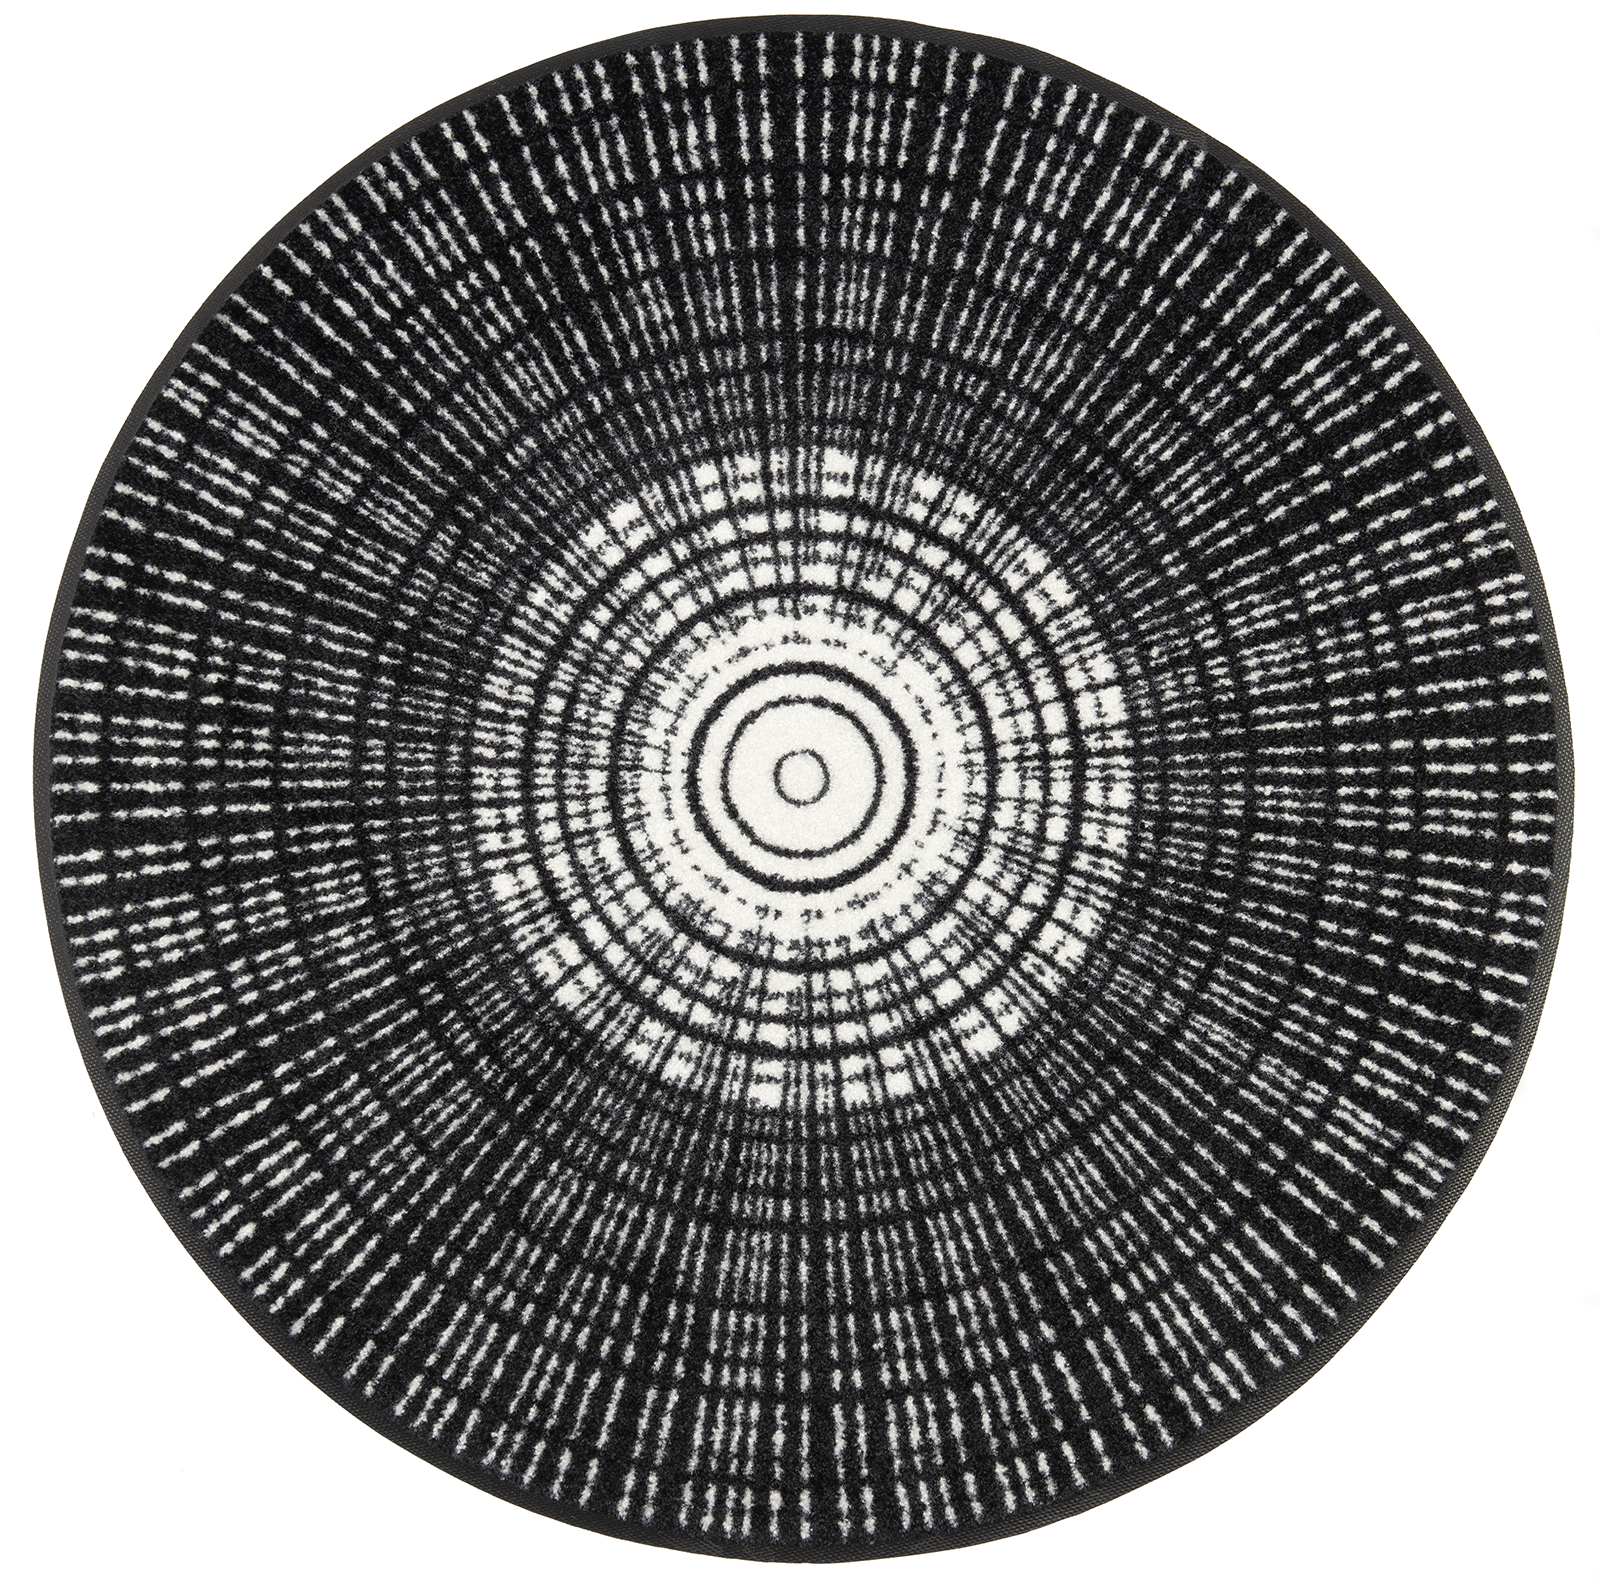 Fußmatte Cascara black, Wash & Dry Design, runde Sonderform, ∅ 115 cm, Draufsicht